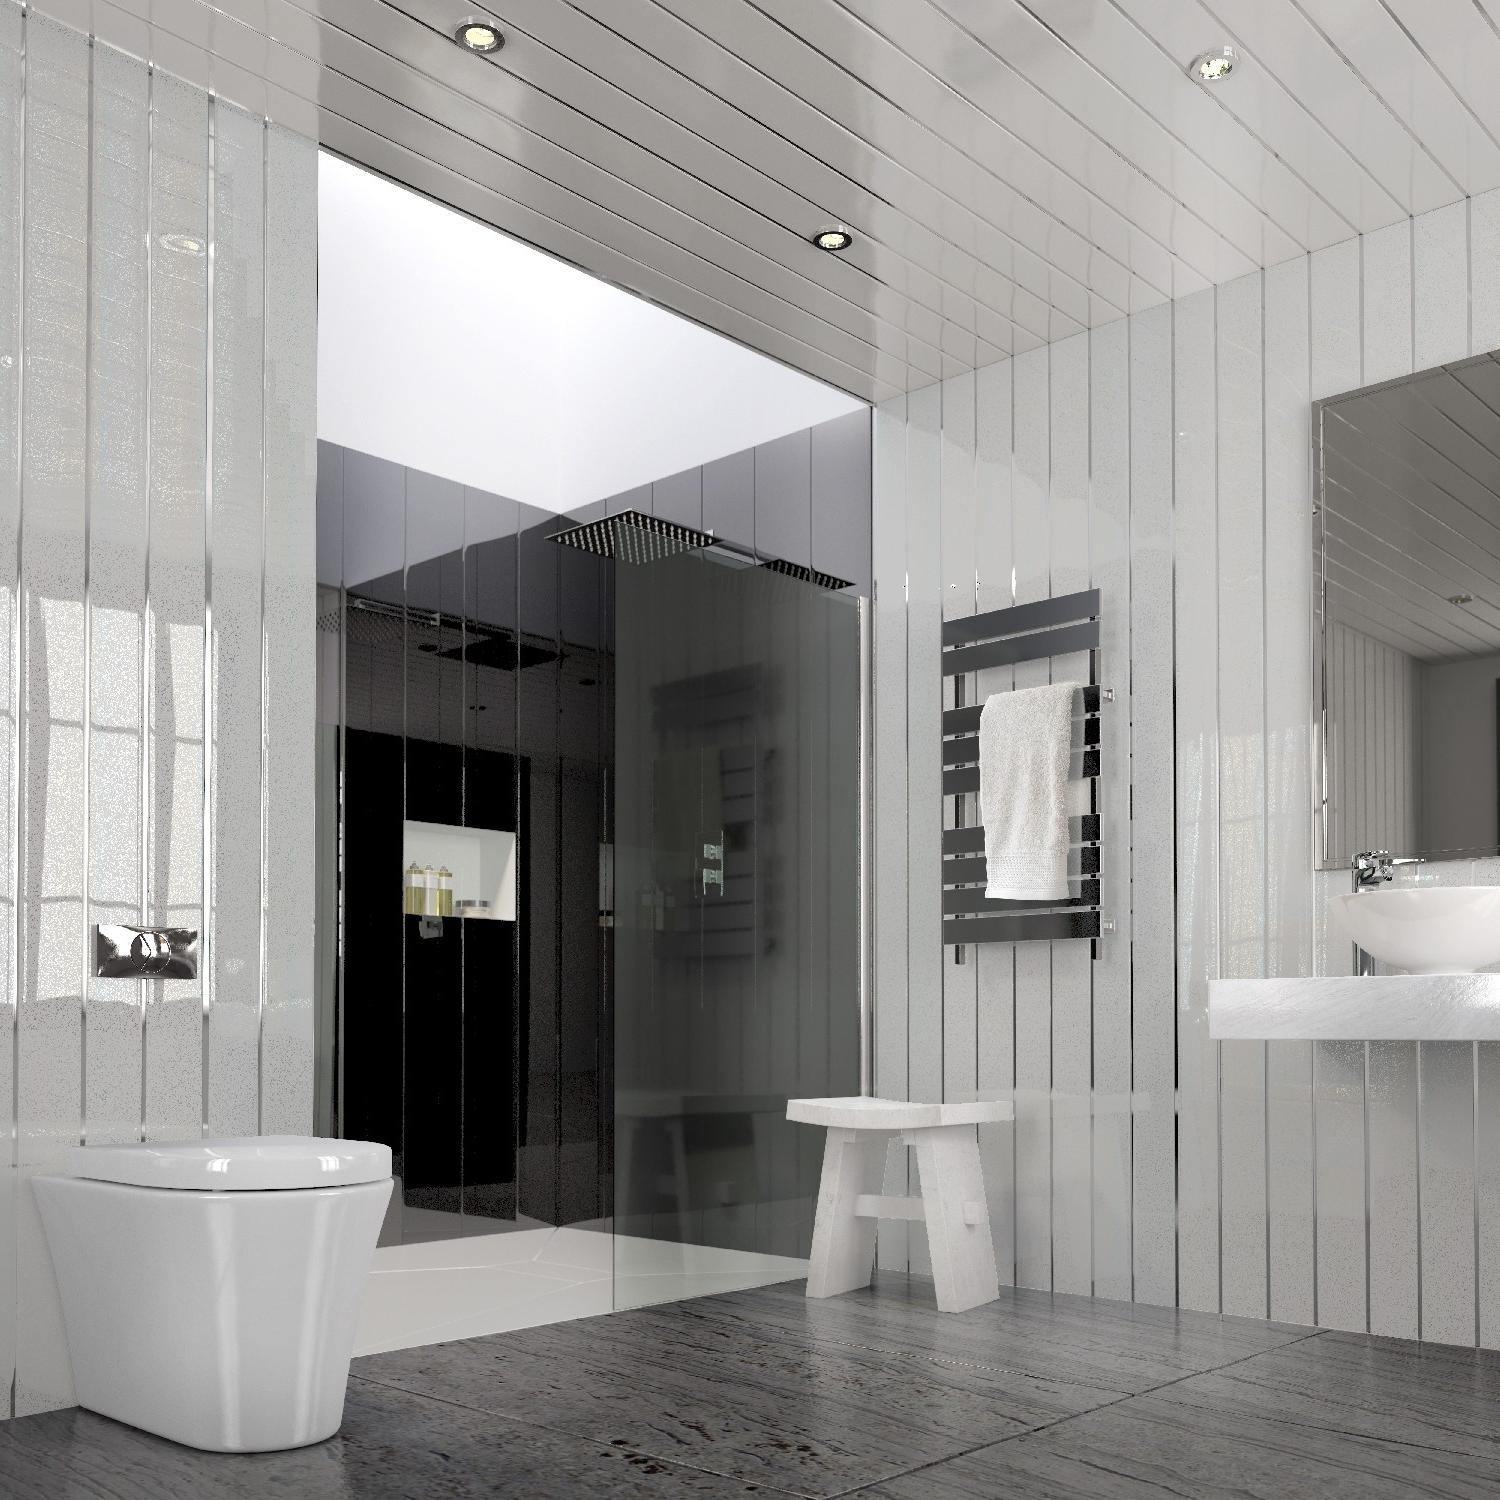 Ванная комната дизайн отделка панелями фото дизайн